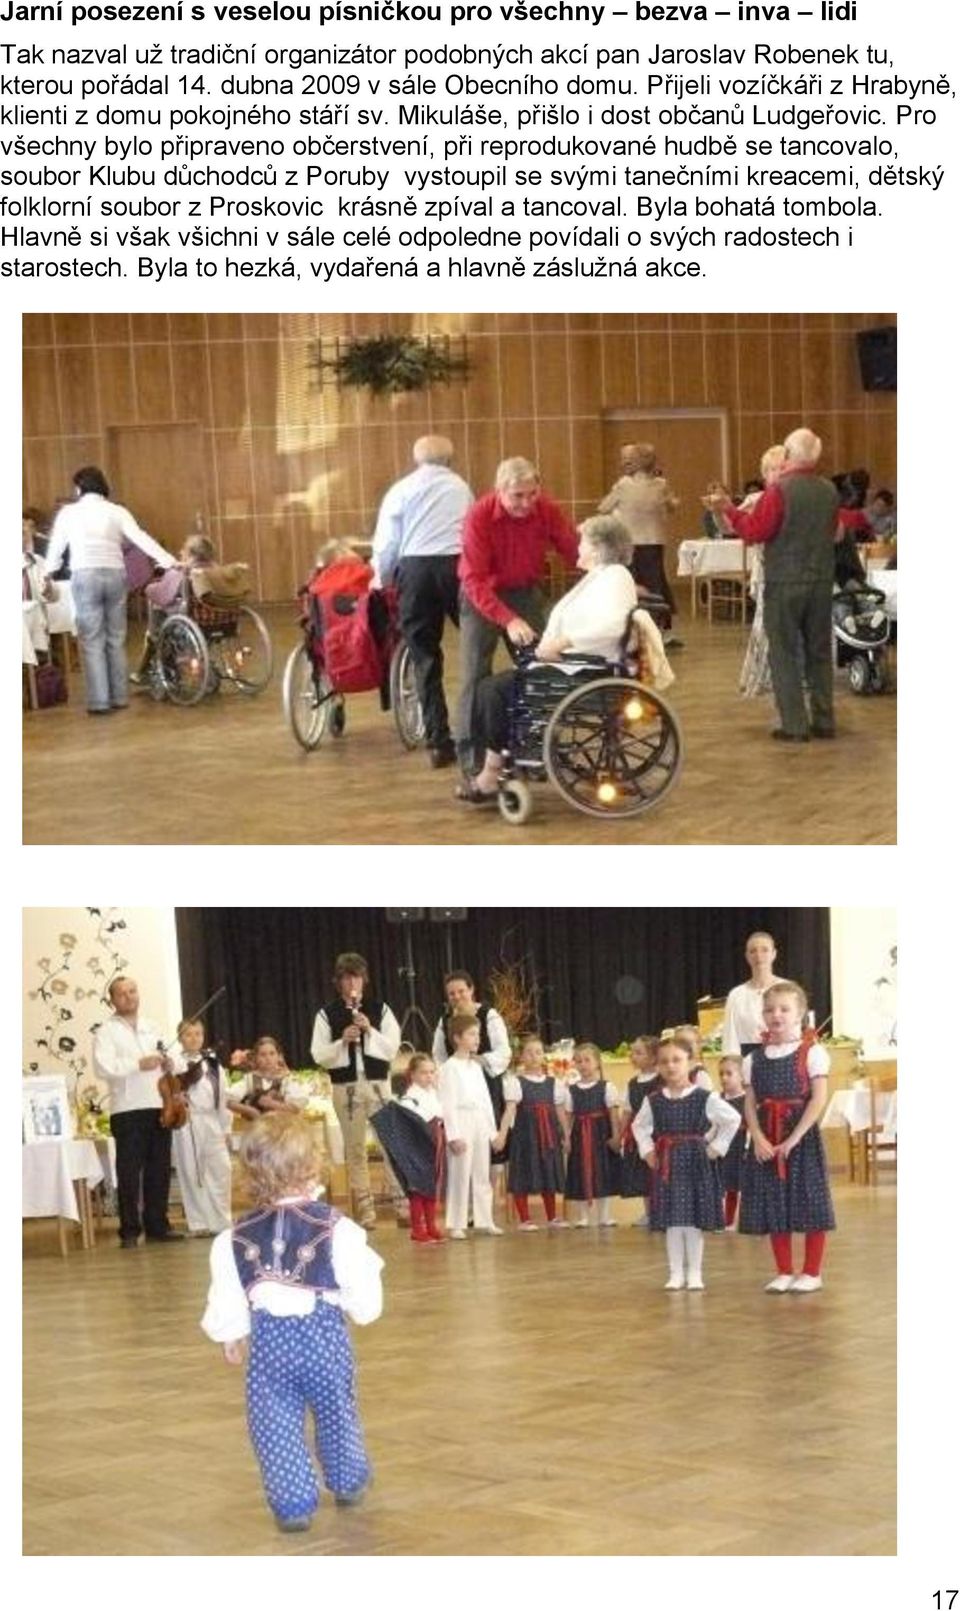 Pro všechny bylo připraveno občerstvení, při reprodukované hudbě se tancovalo, soubor Klubu důchodců z Poruby vystoupil se svými tanečními kreacemi, dětský folklorní